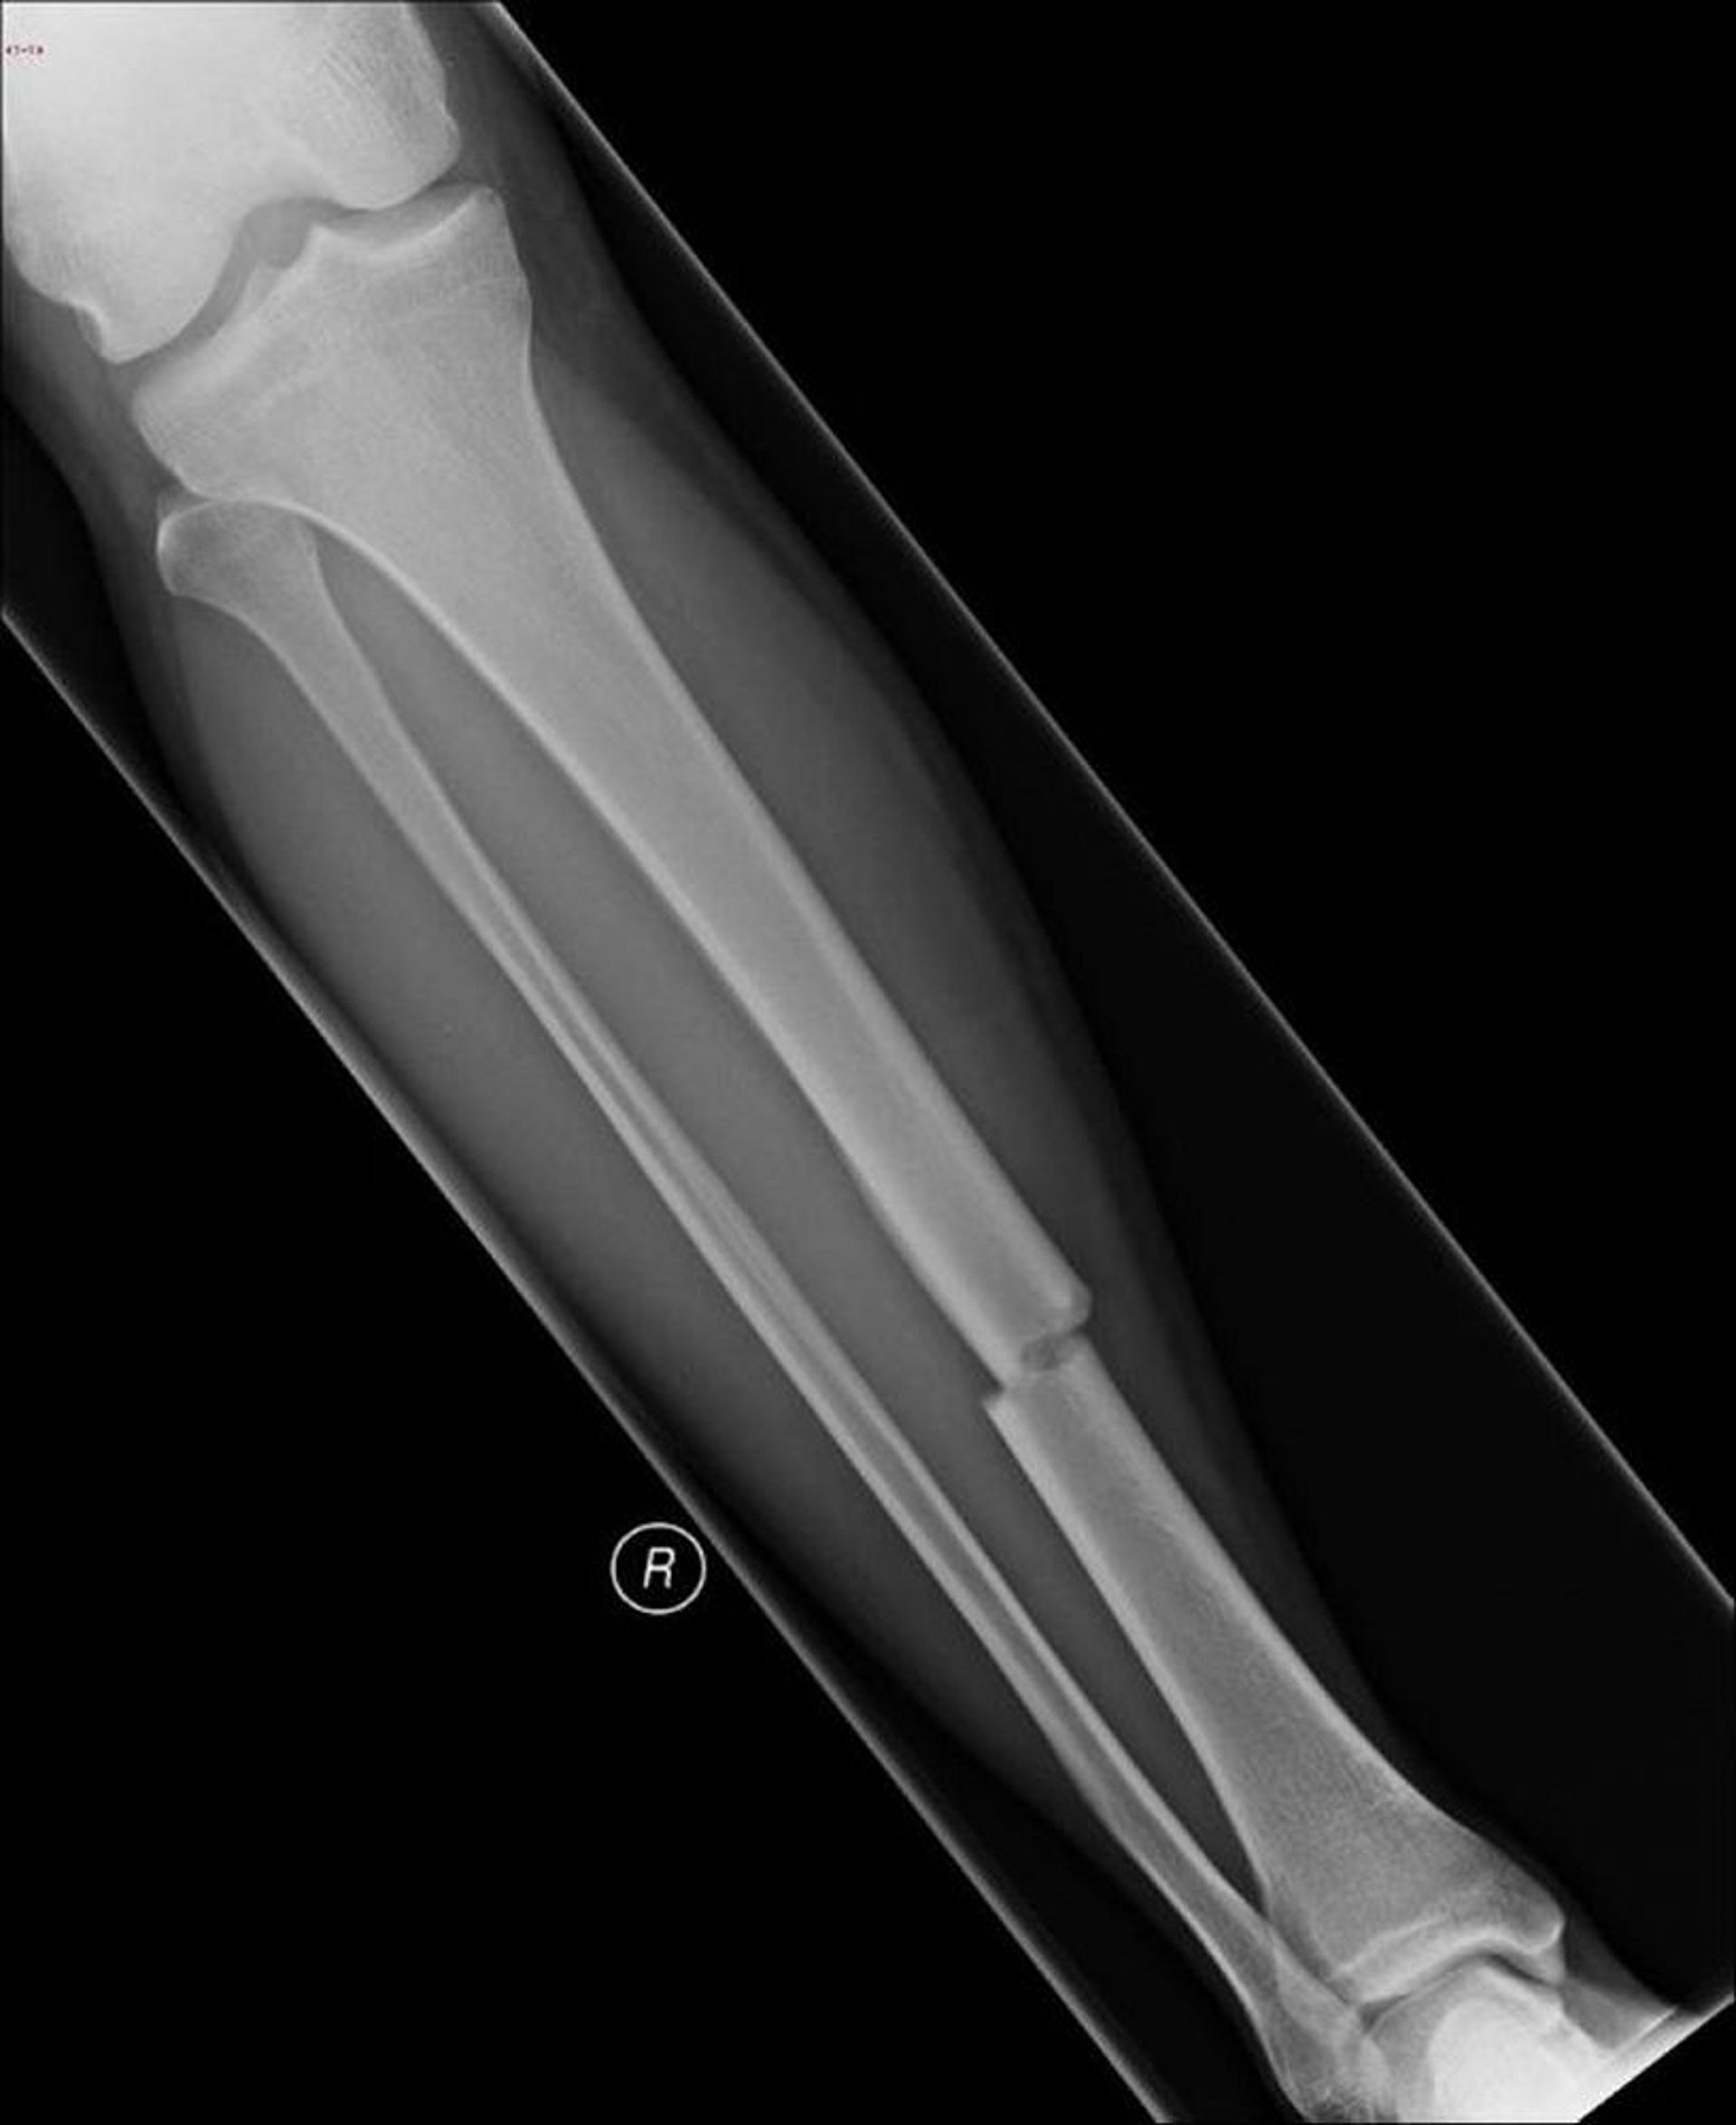 Fratura do osso da canela (tíbia)